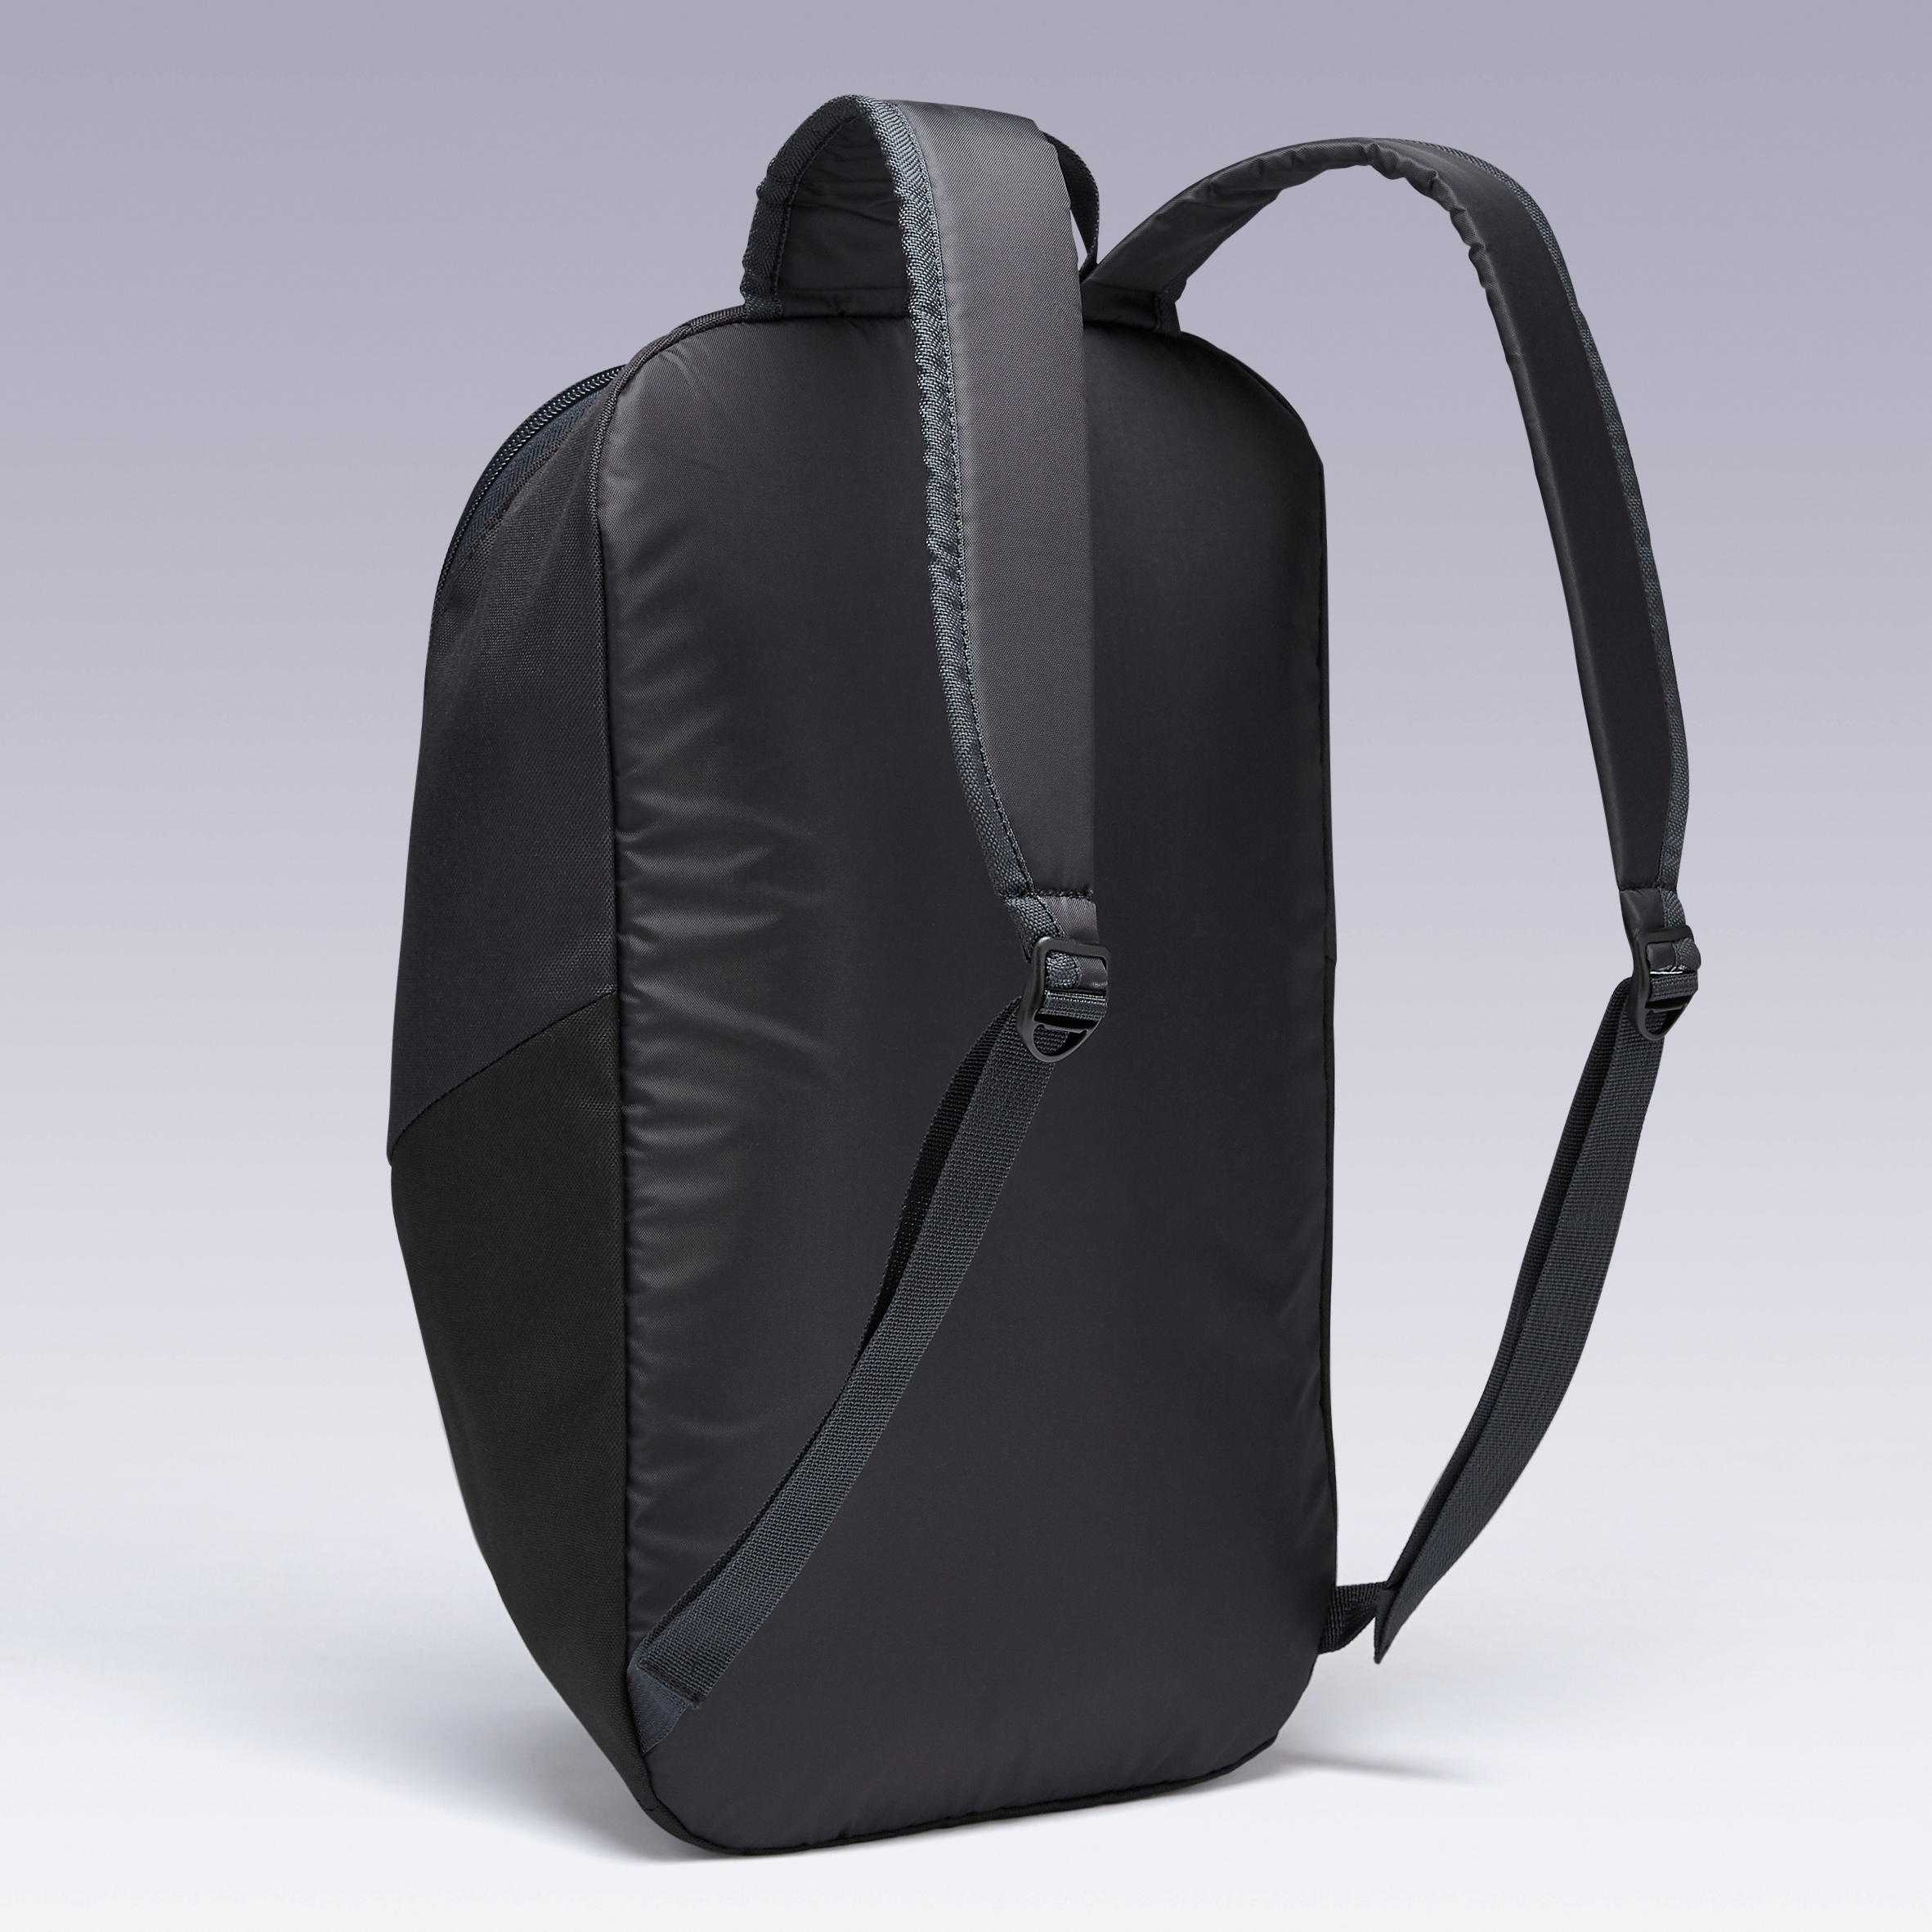 ULPP 17-Litre Backpack - Black 4/11